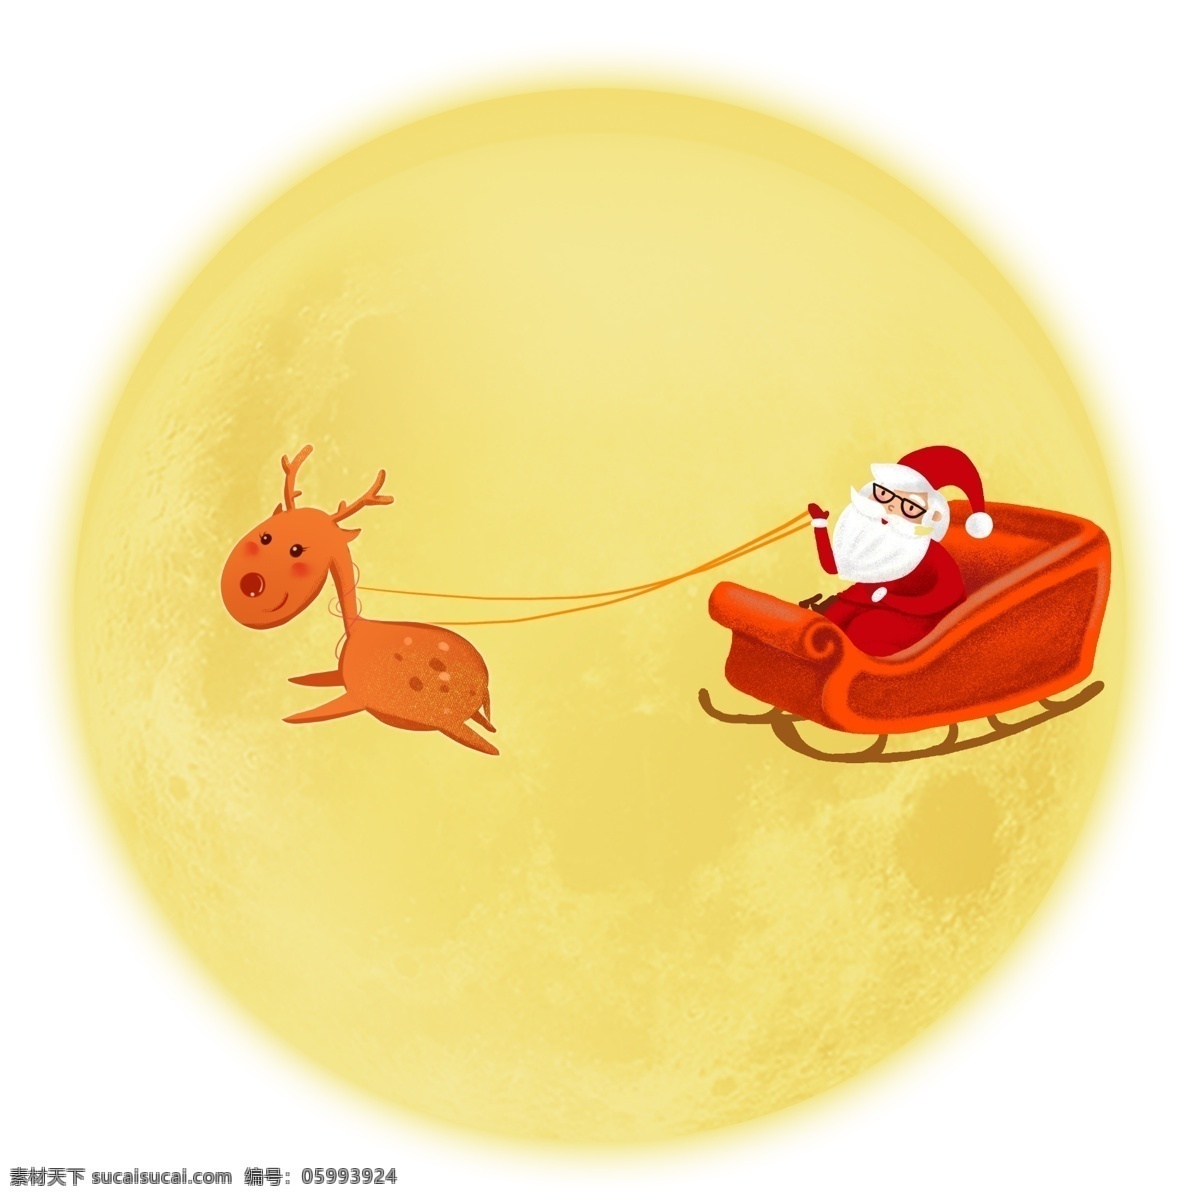 圣诞节 圣诞老人 驯鹿 雪橇 圆月 国外节日 满怀期待 眼镜老人 划过天空 微笑